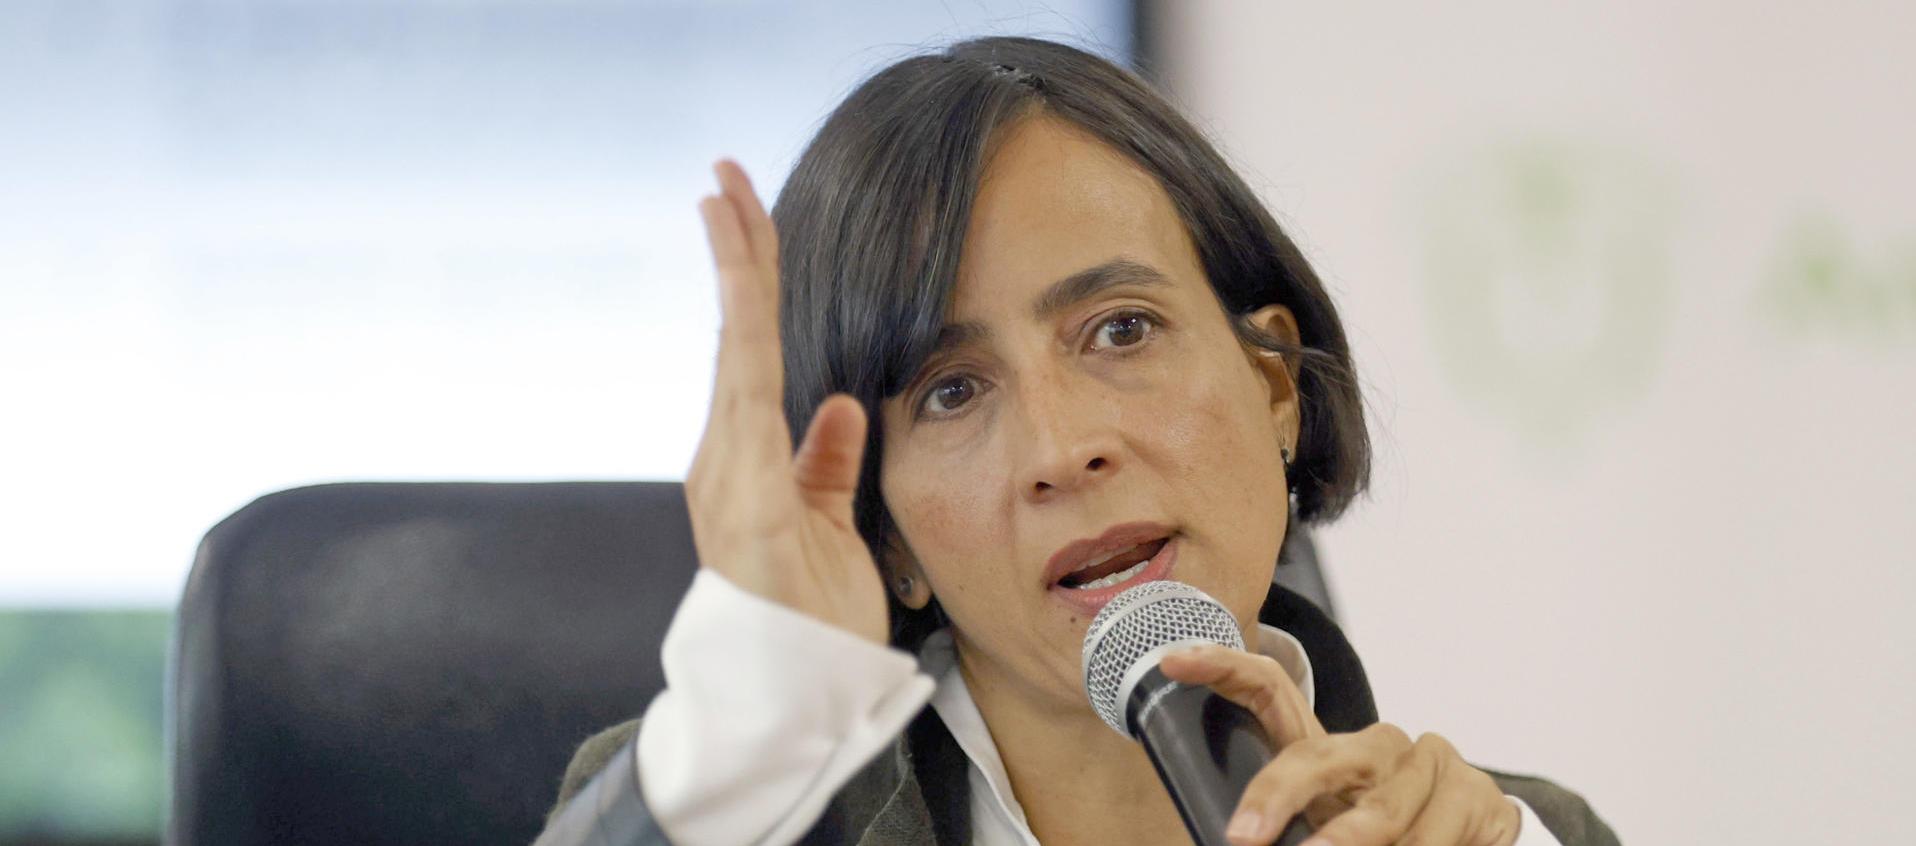 La Ministra de Ambiente Susana Muhamad.